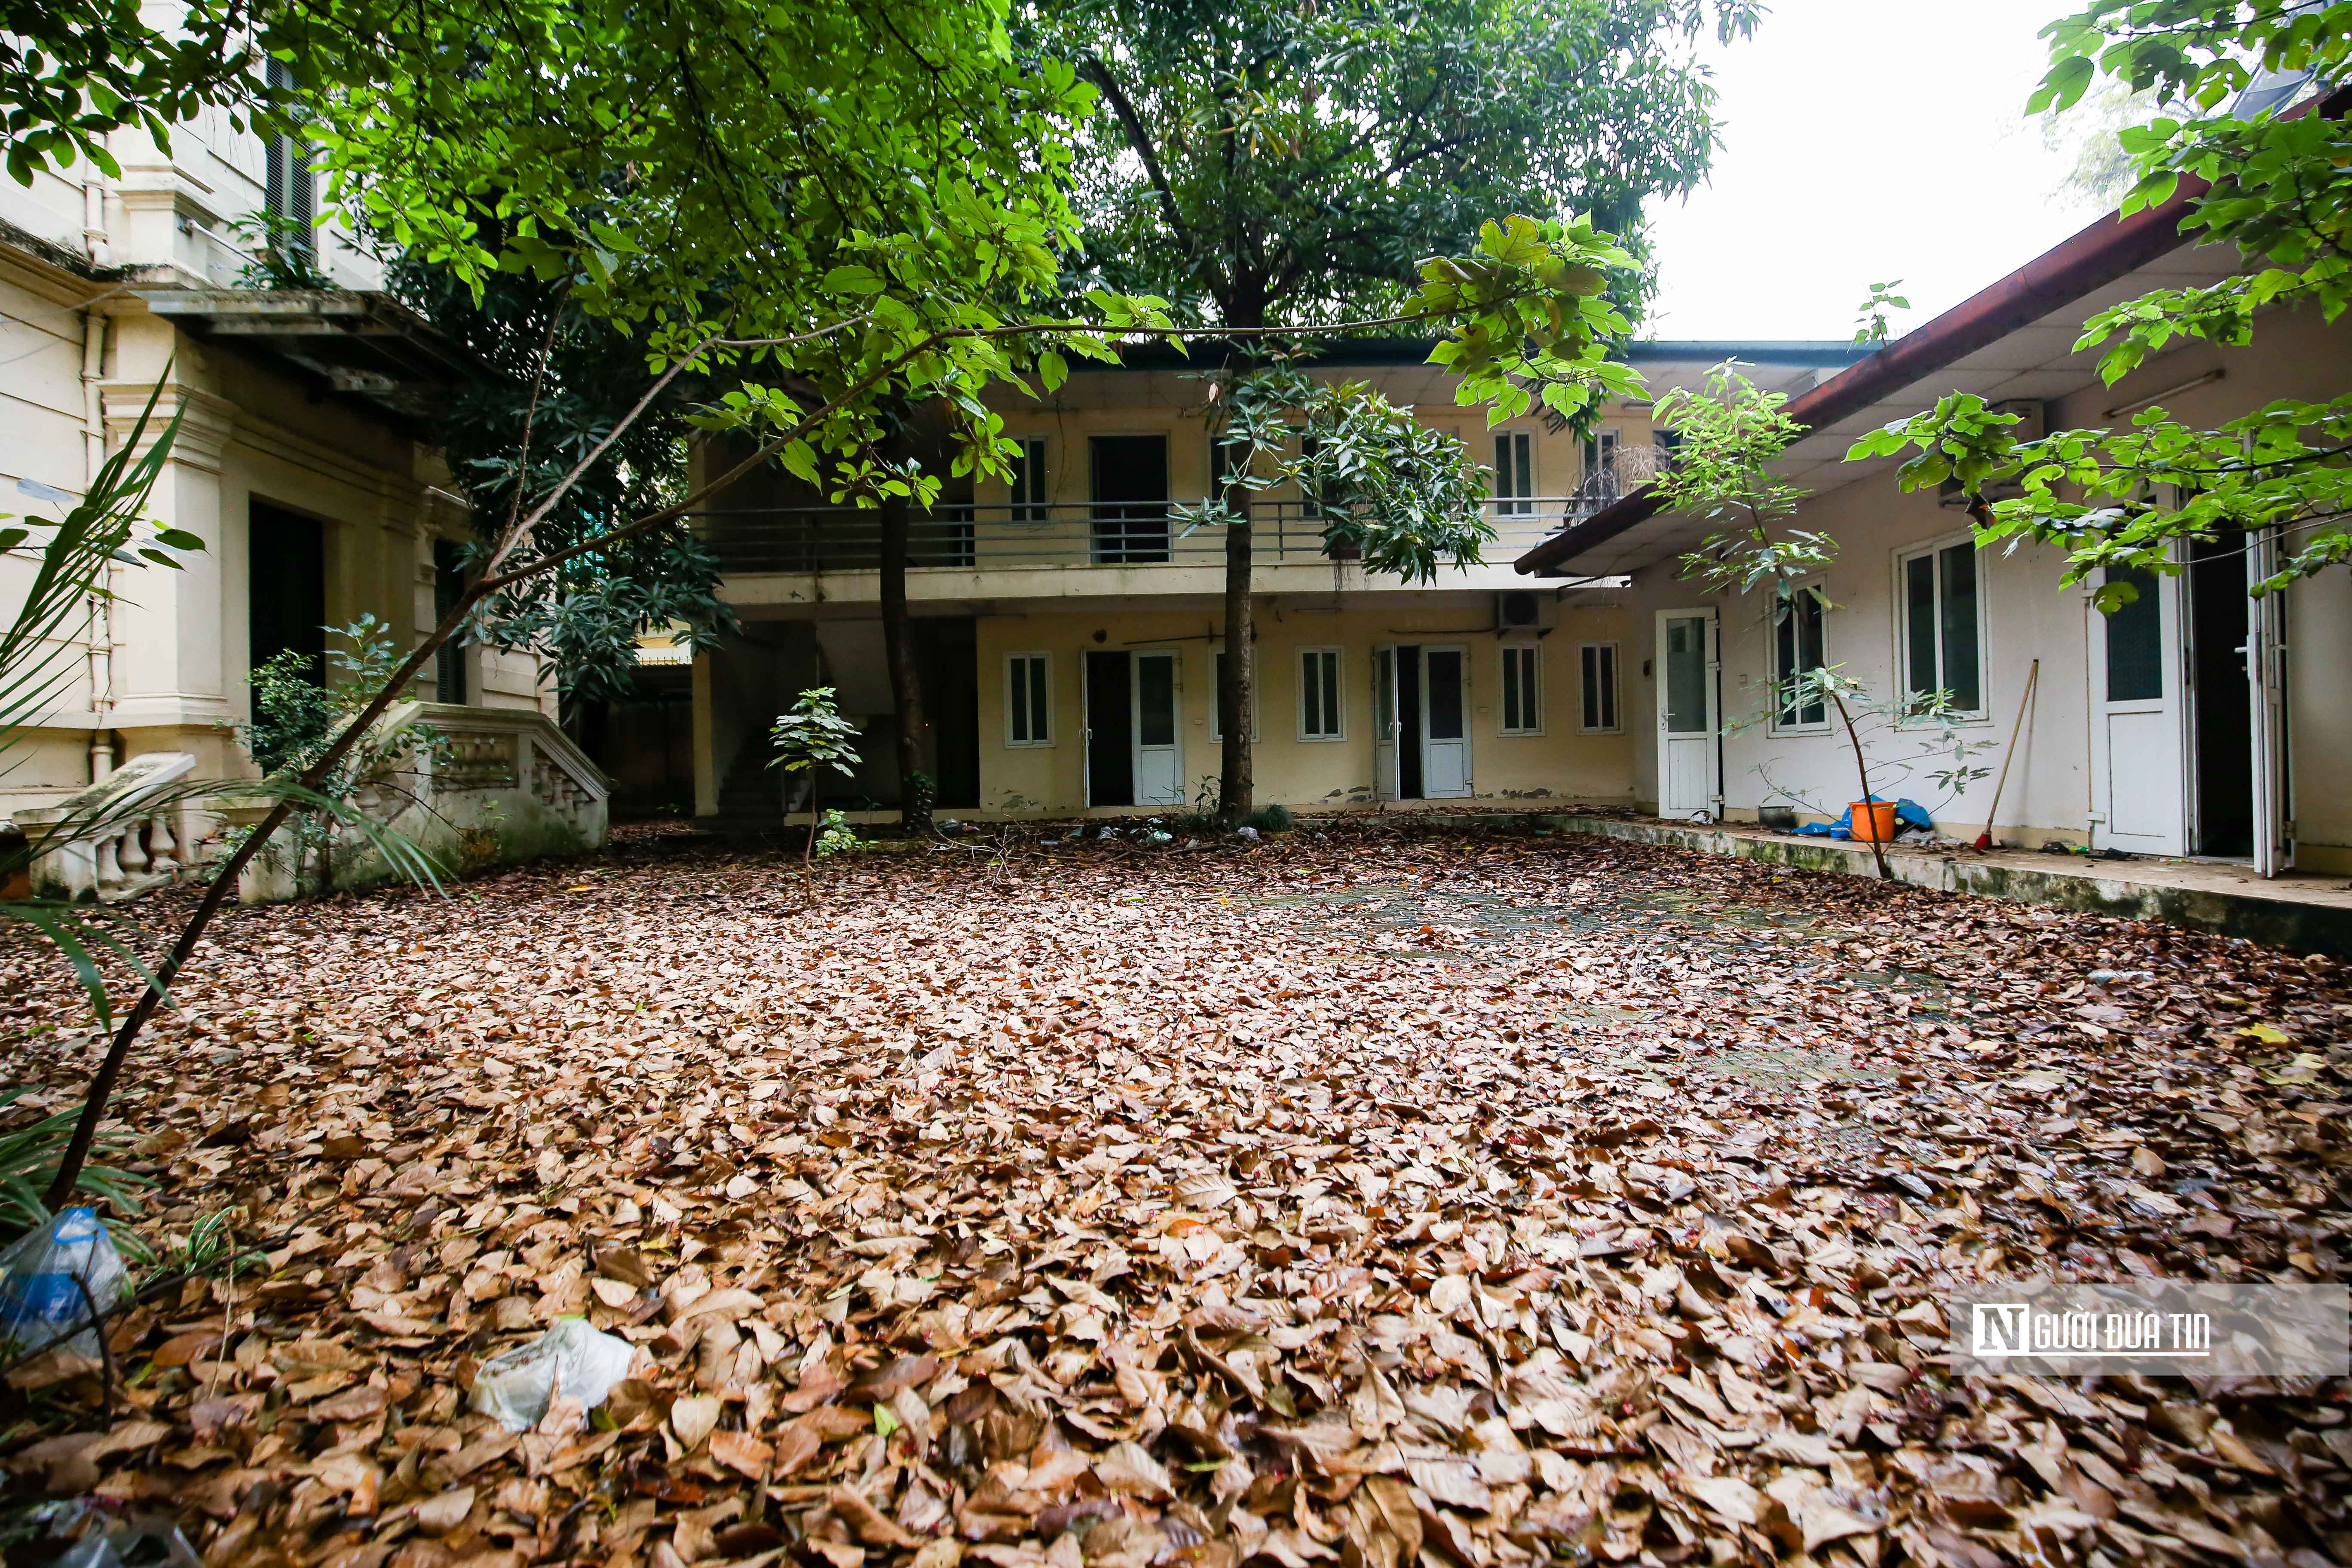 Bất động sản - Bên trong căn biệt thự từng được cựu Chủ tịch Hà Nội sử dụng (Hình 12).